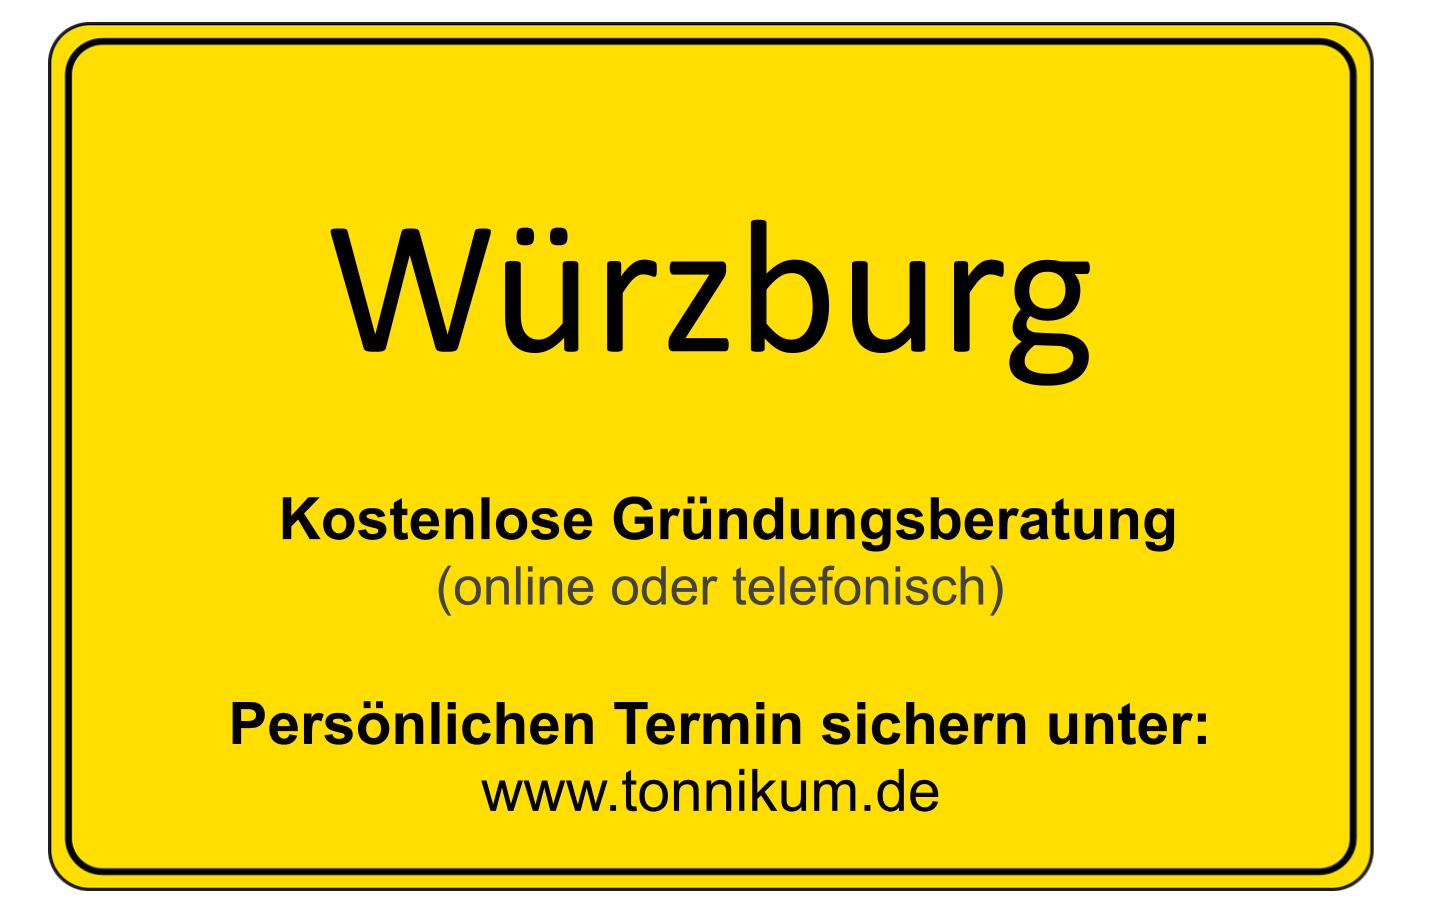 Würzburg Existenzgründungsberatung ⇒ kostenloses Erstgespräch